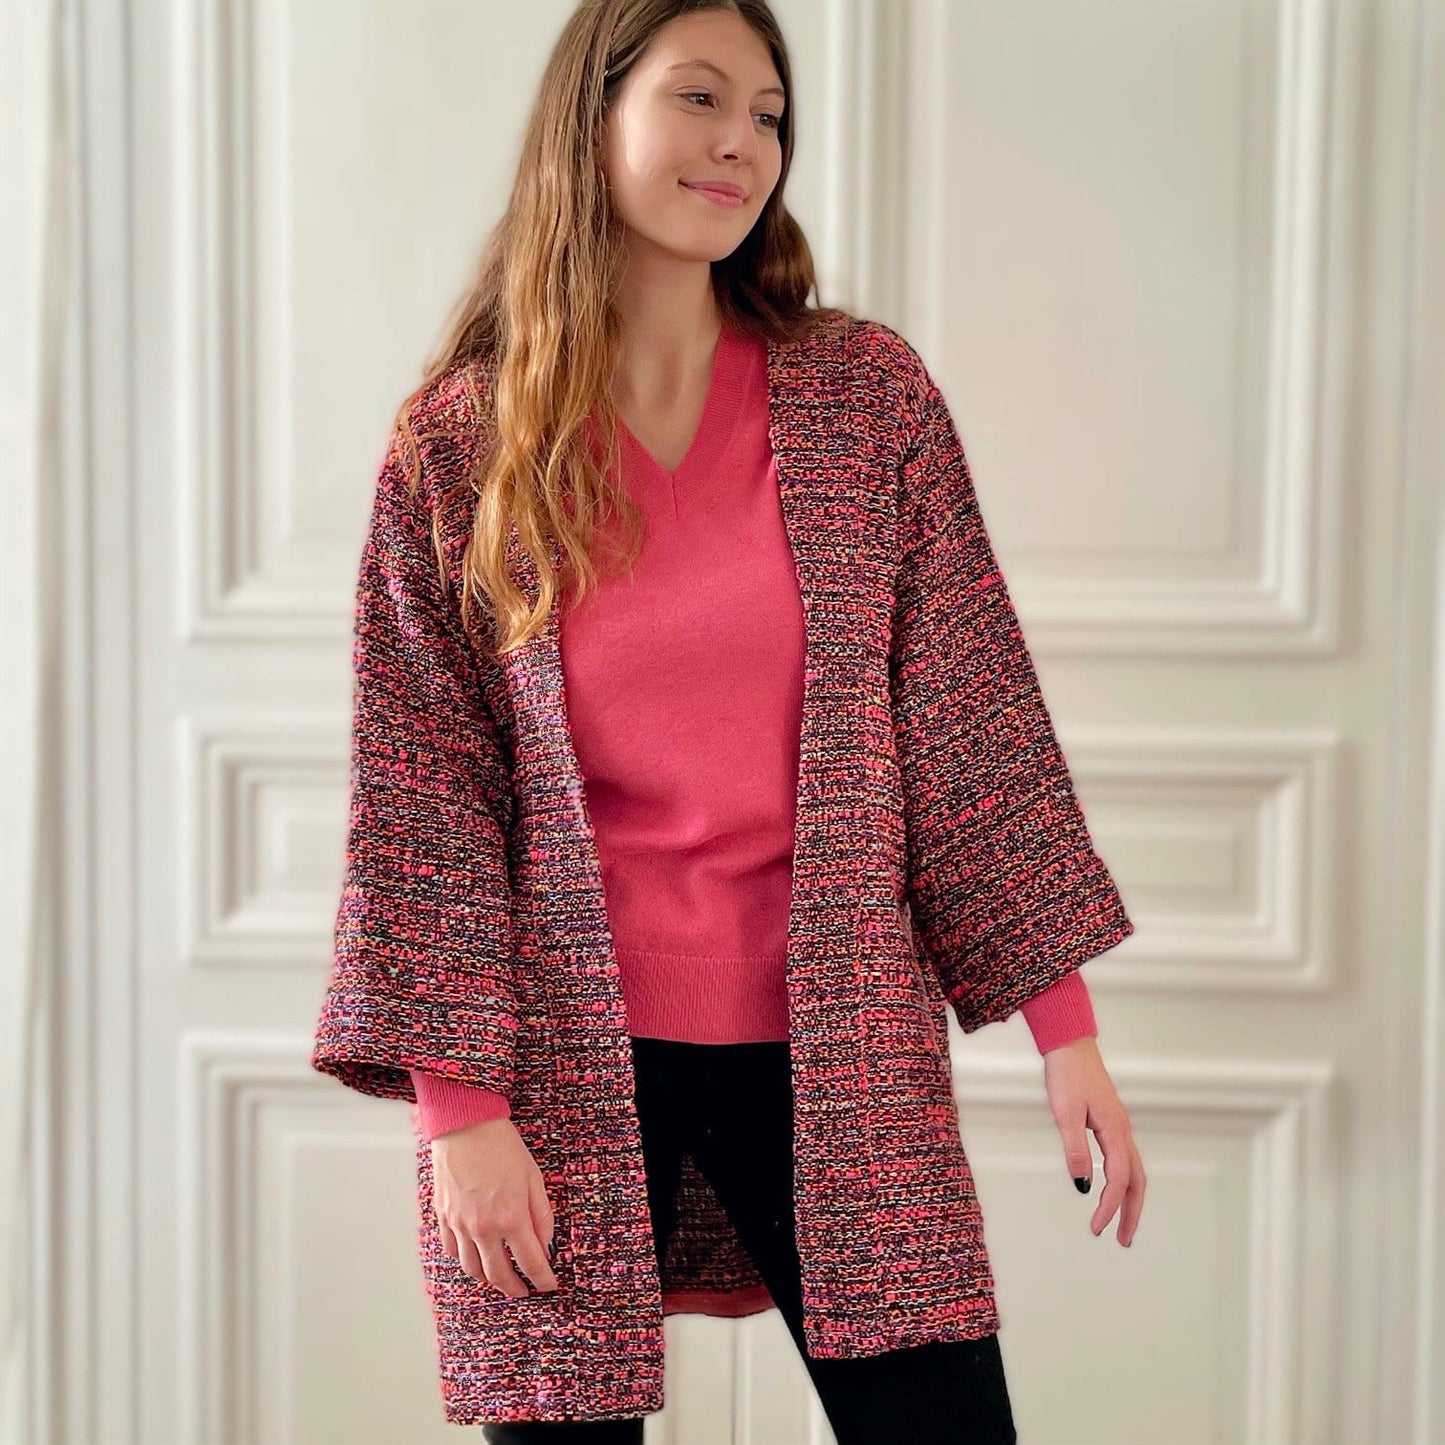 Kimono en tweed rose et noir tissé et fabriqué en France